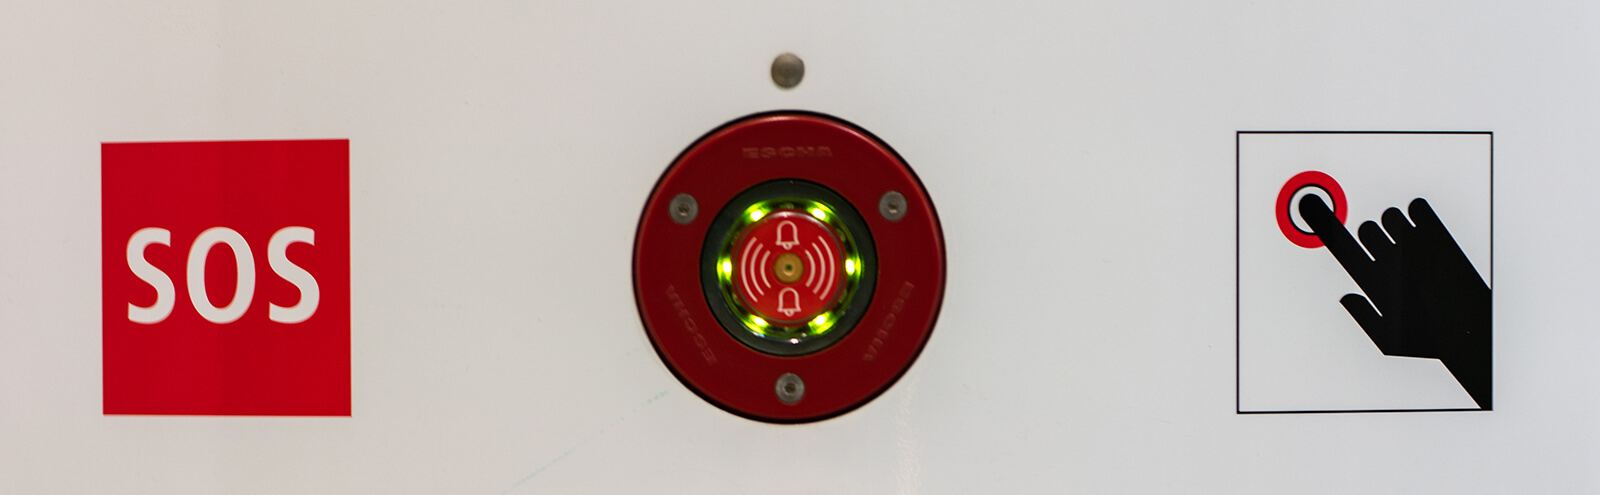 Bildausschnitt der Notruf- und Informationssäule, der den roten Notrufknopf in Nahaufnahme zeigt